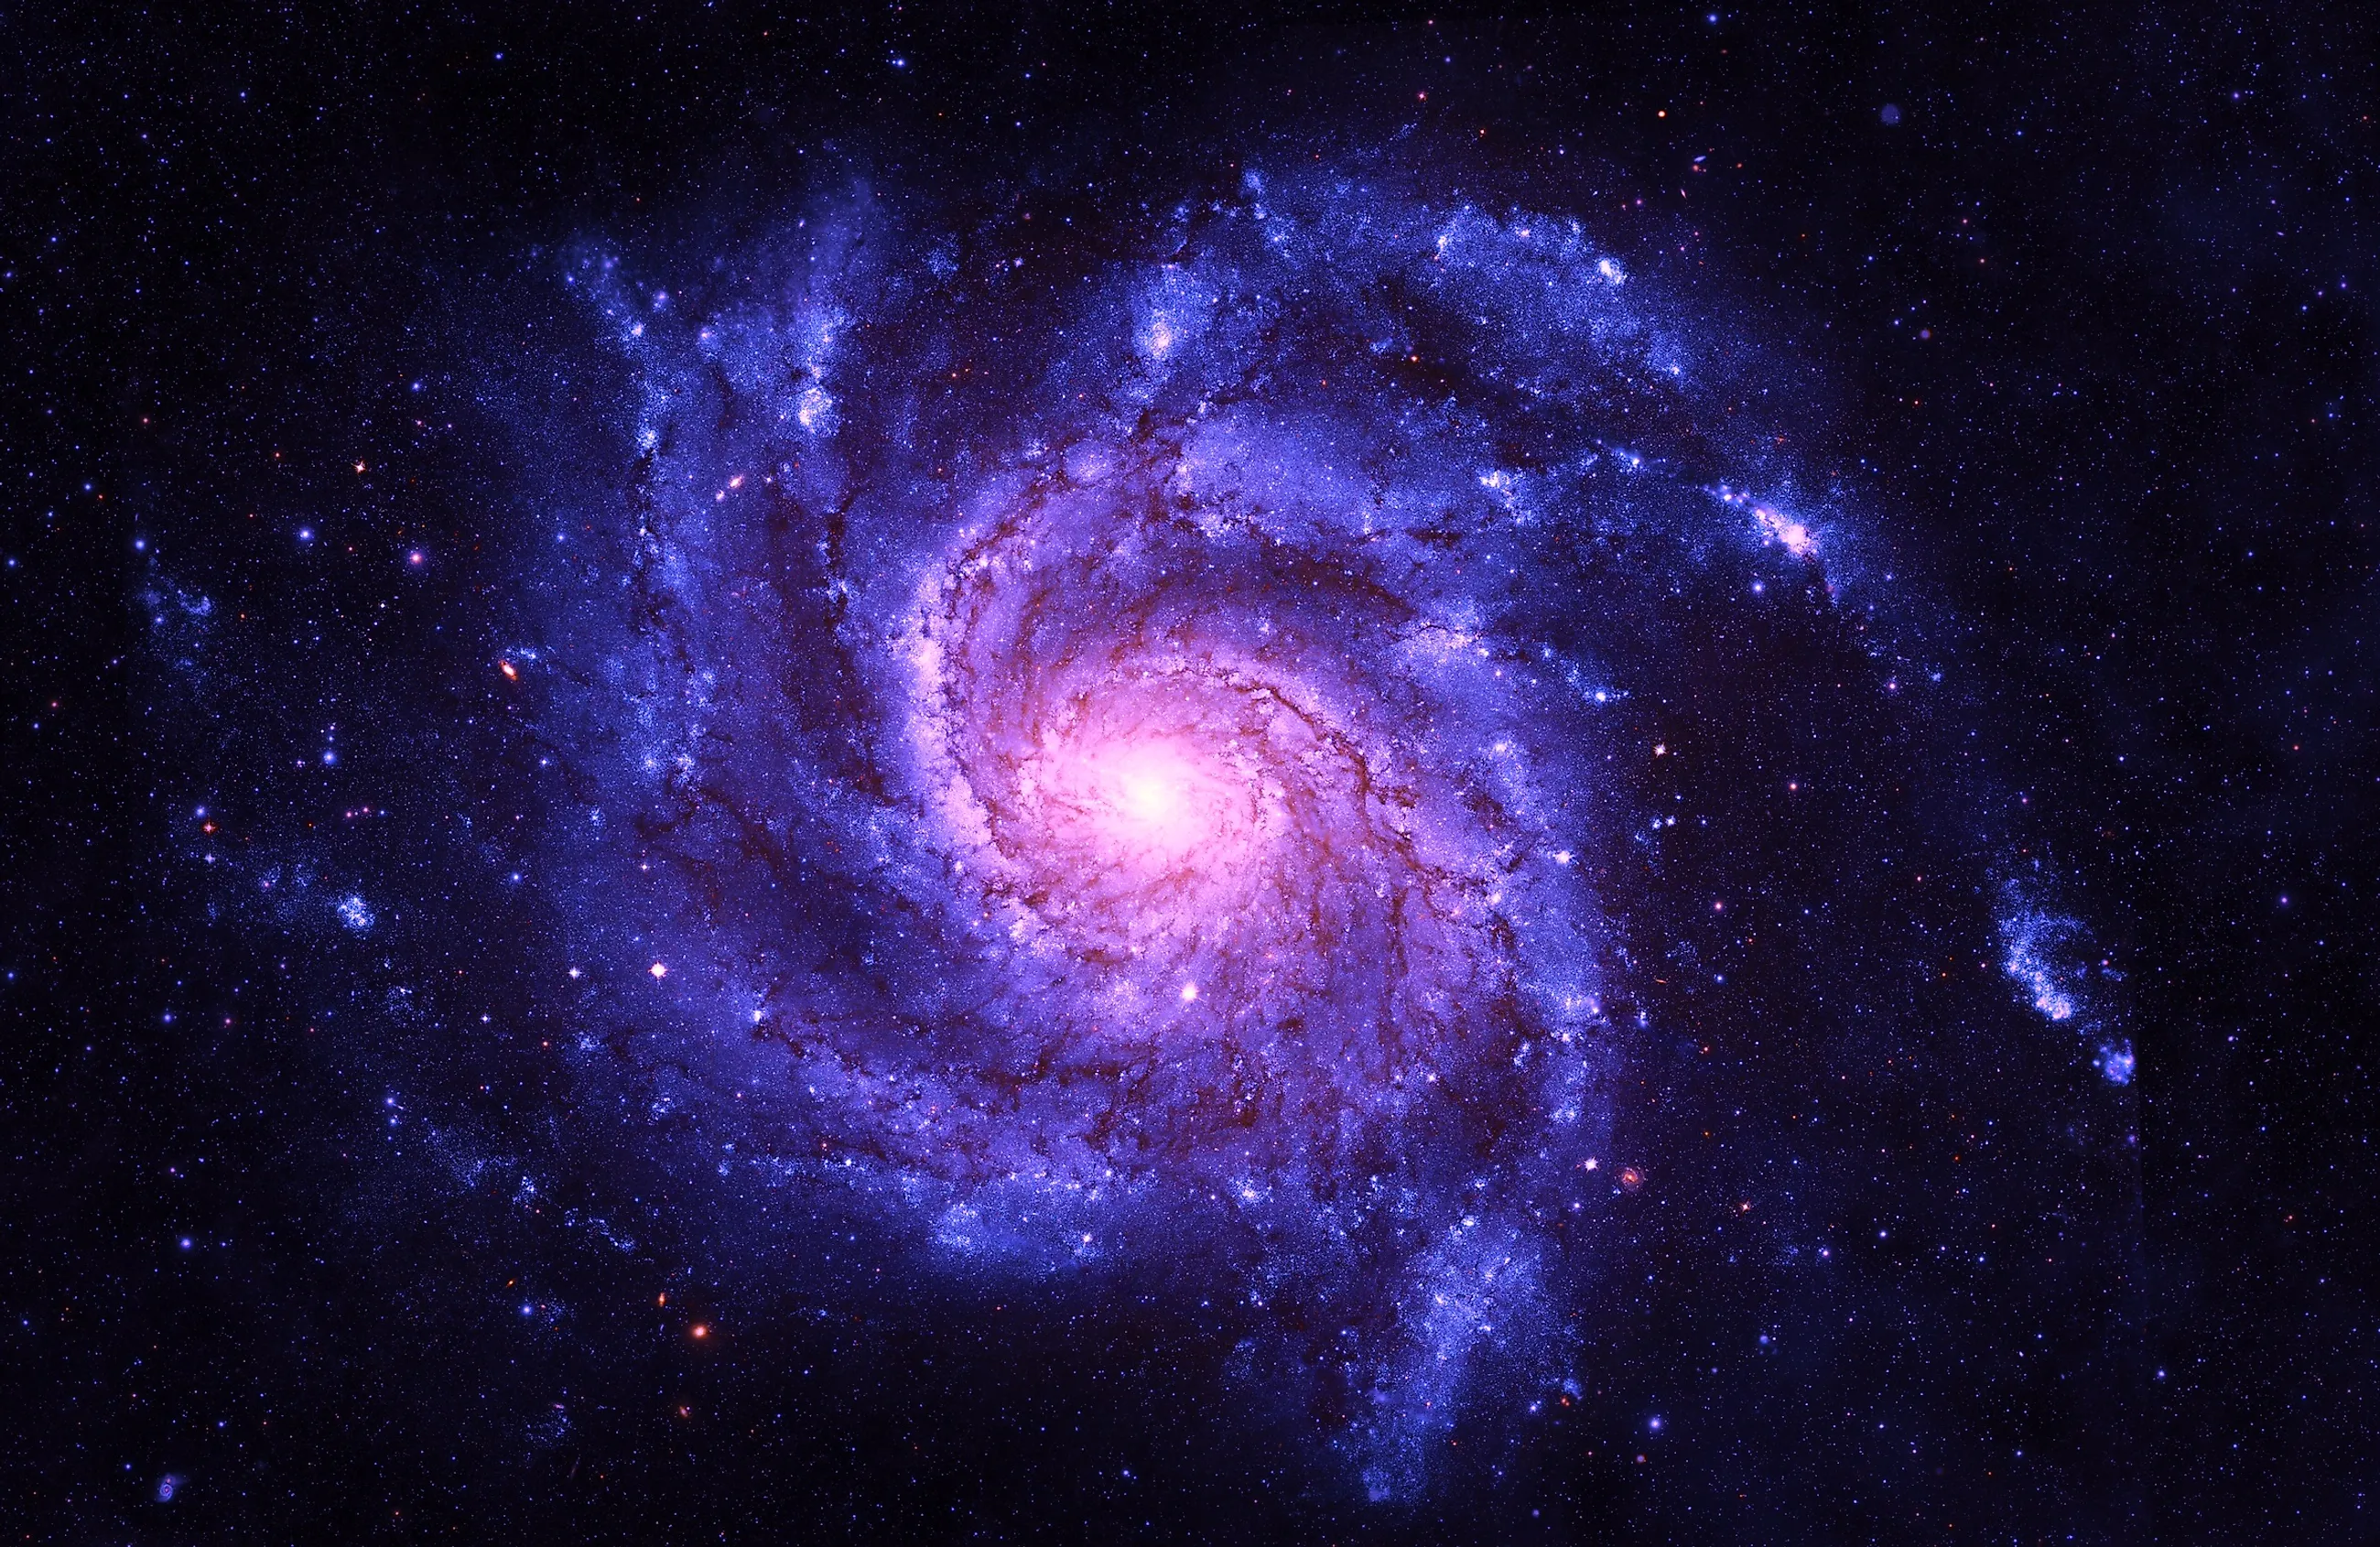 Відкриття в галактиці NGC 4383: Вибухи викидають газовий потік на відстань 20 000 світлових років